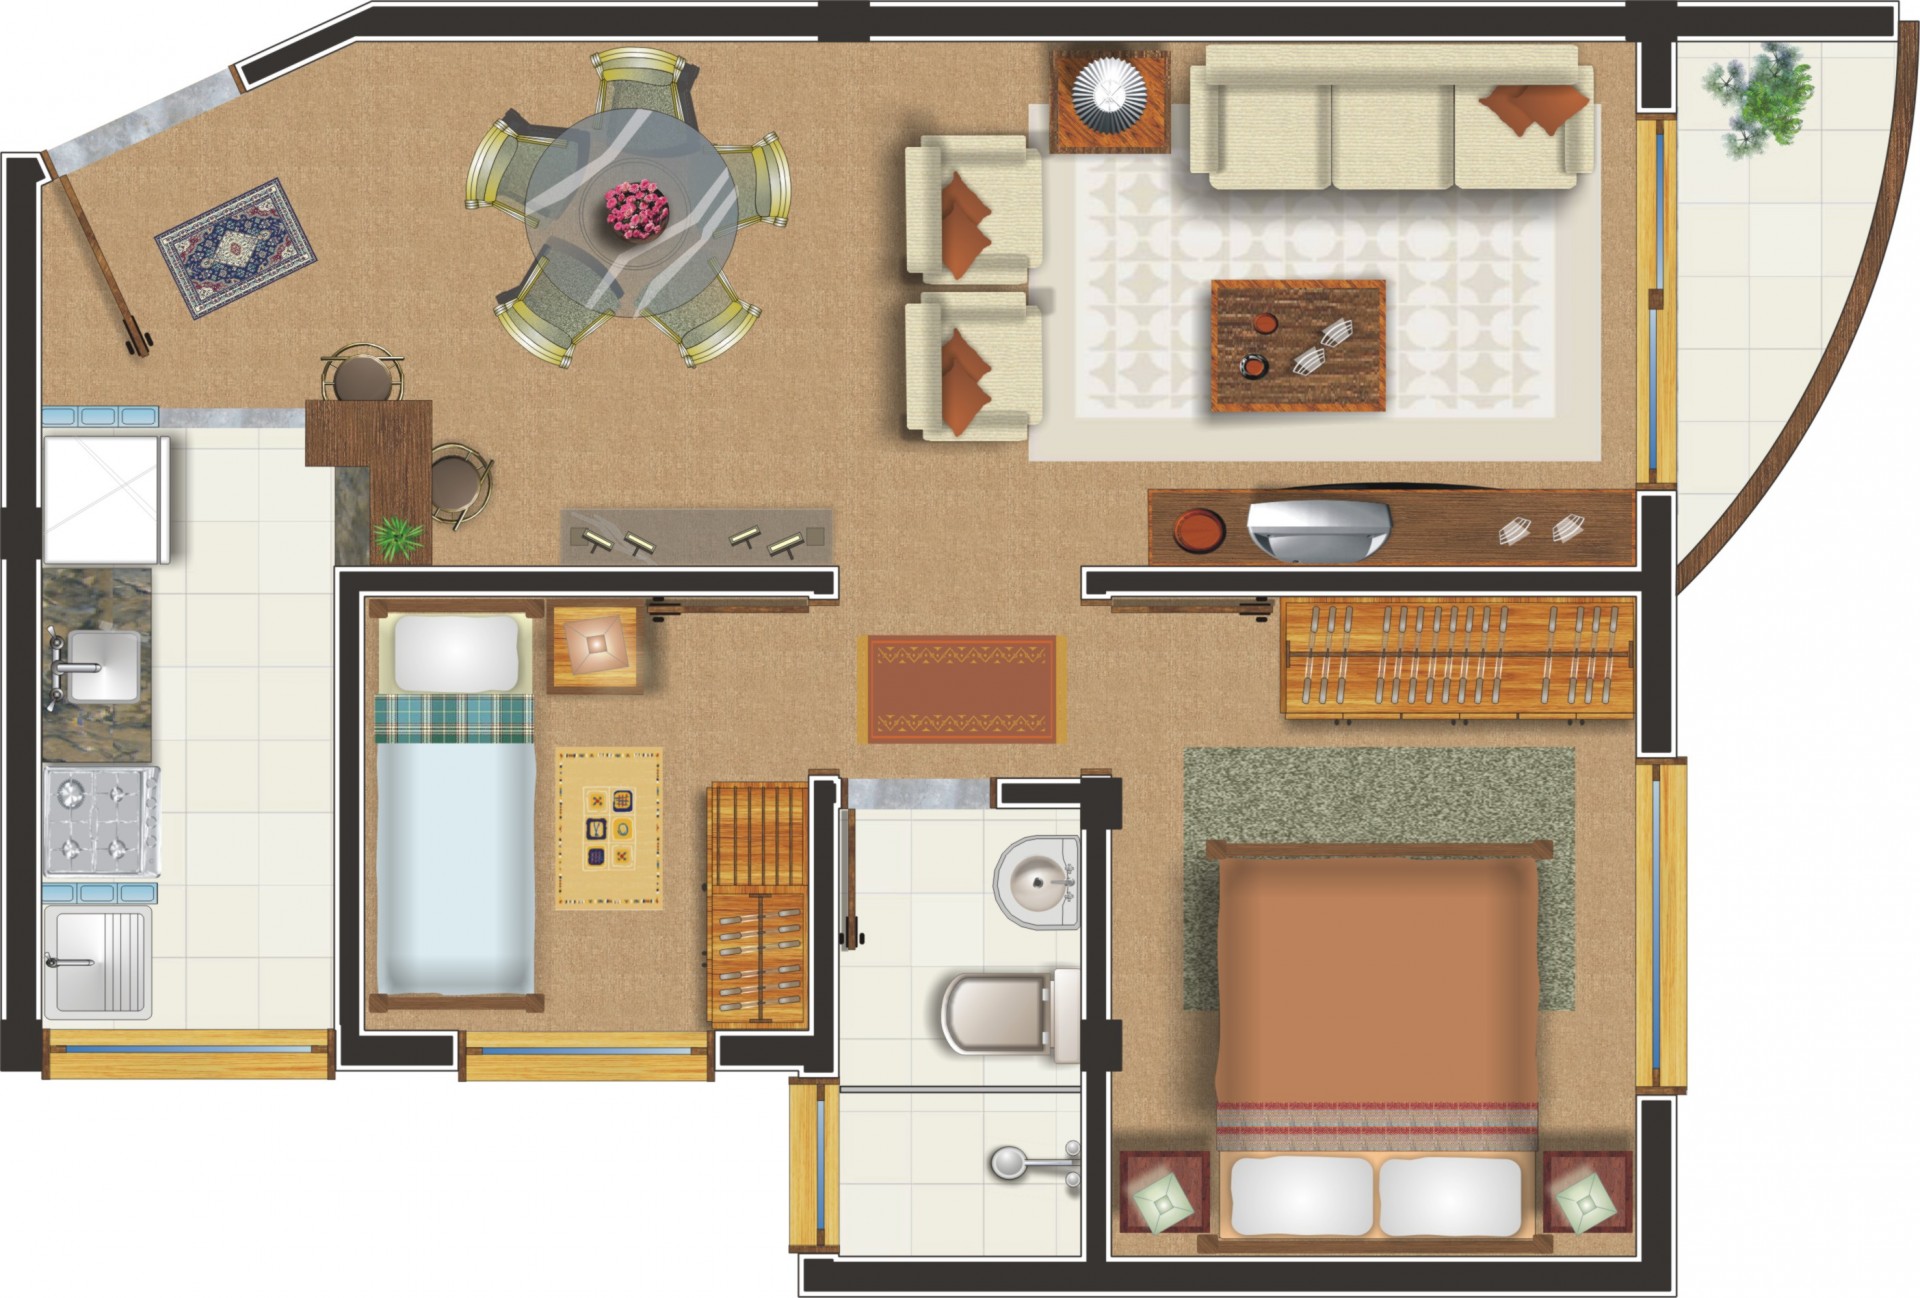 Apartamento com 2 dormitórios - Fundos